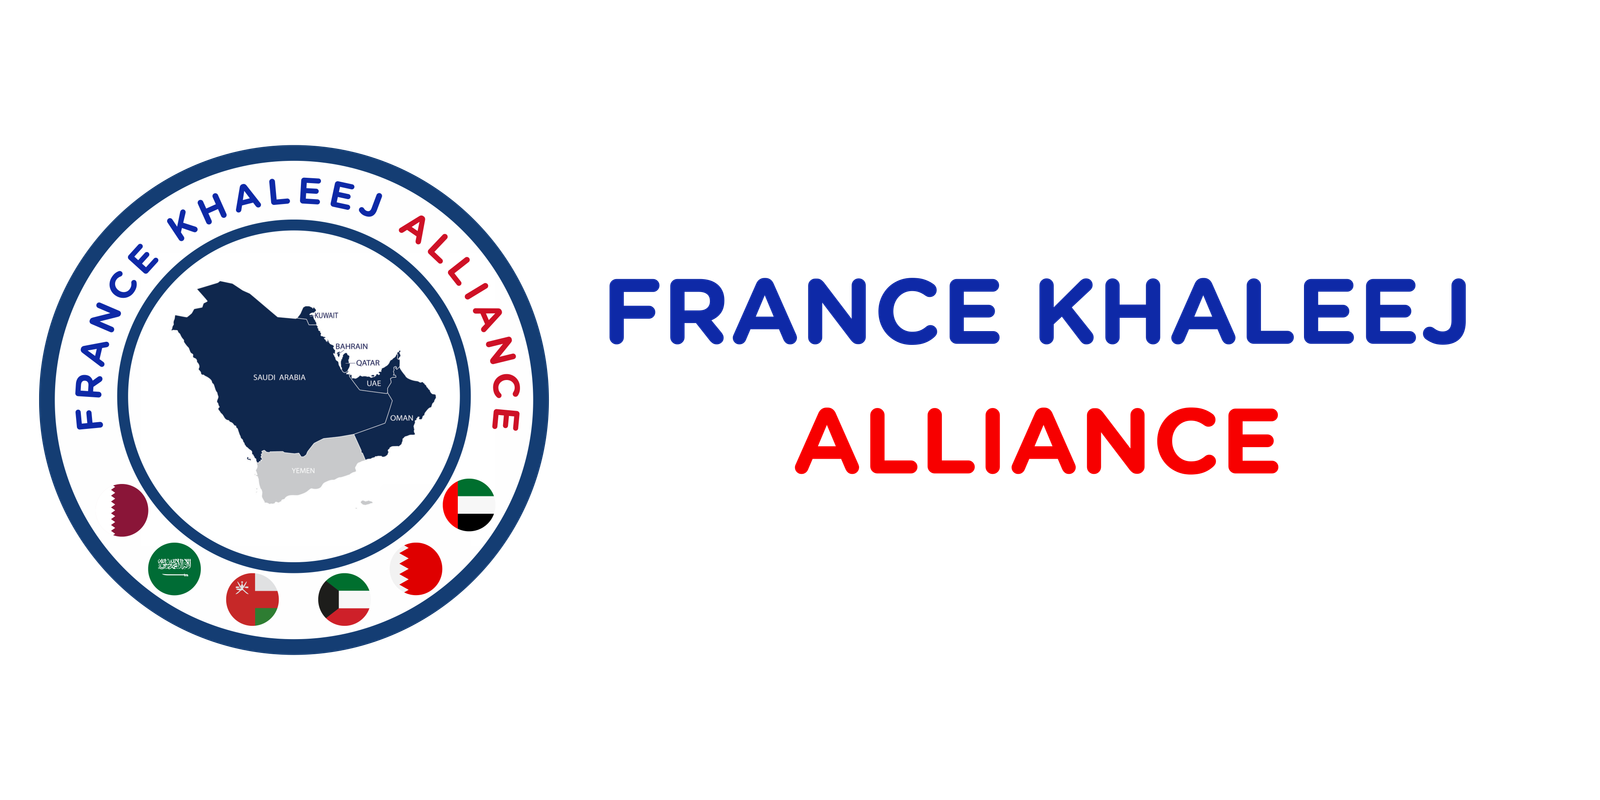 FRANCE KHALEEJ ALLIANCE